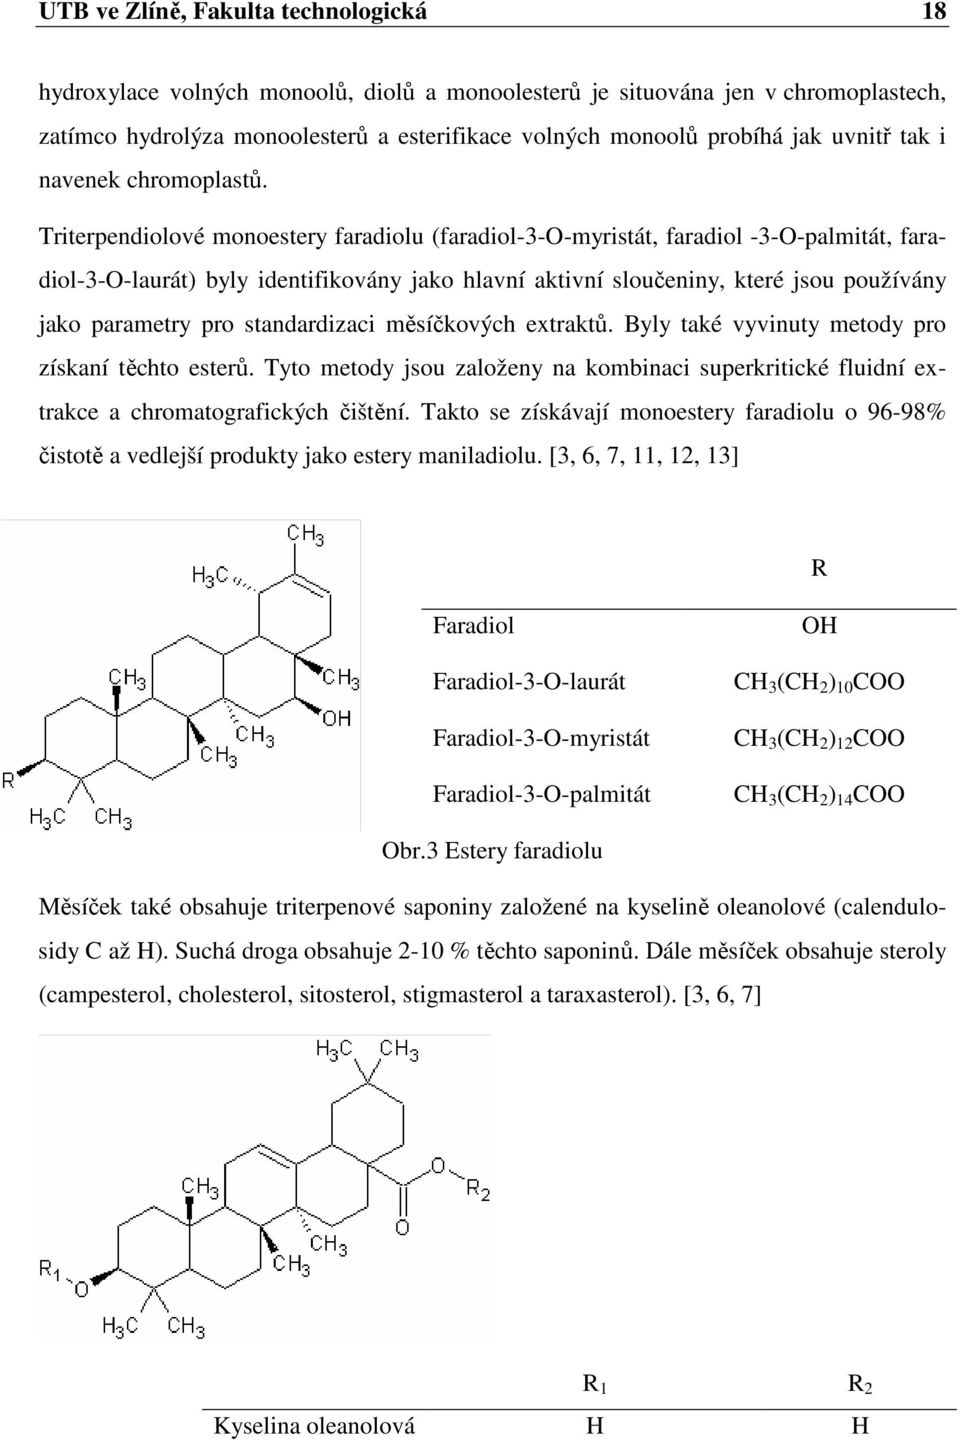 Triterpendiolové monoestery faradiolu (faradiol-3-o-myristát, faradiol -3-O-palmitát, faradiol-3-o-laurát) byly identifikovány jako hlavní aktivní sloučeniny, které jsou používány jako parametry pro